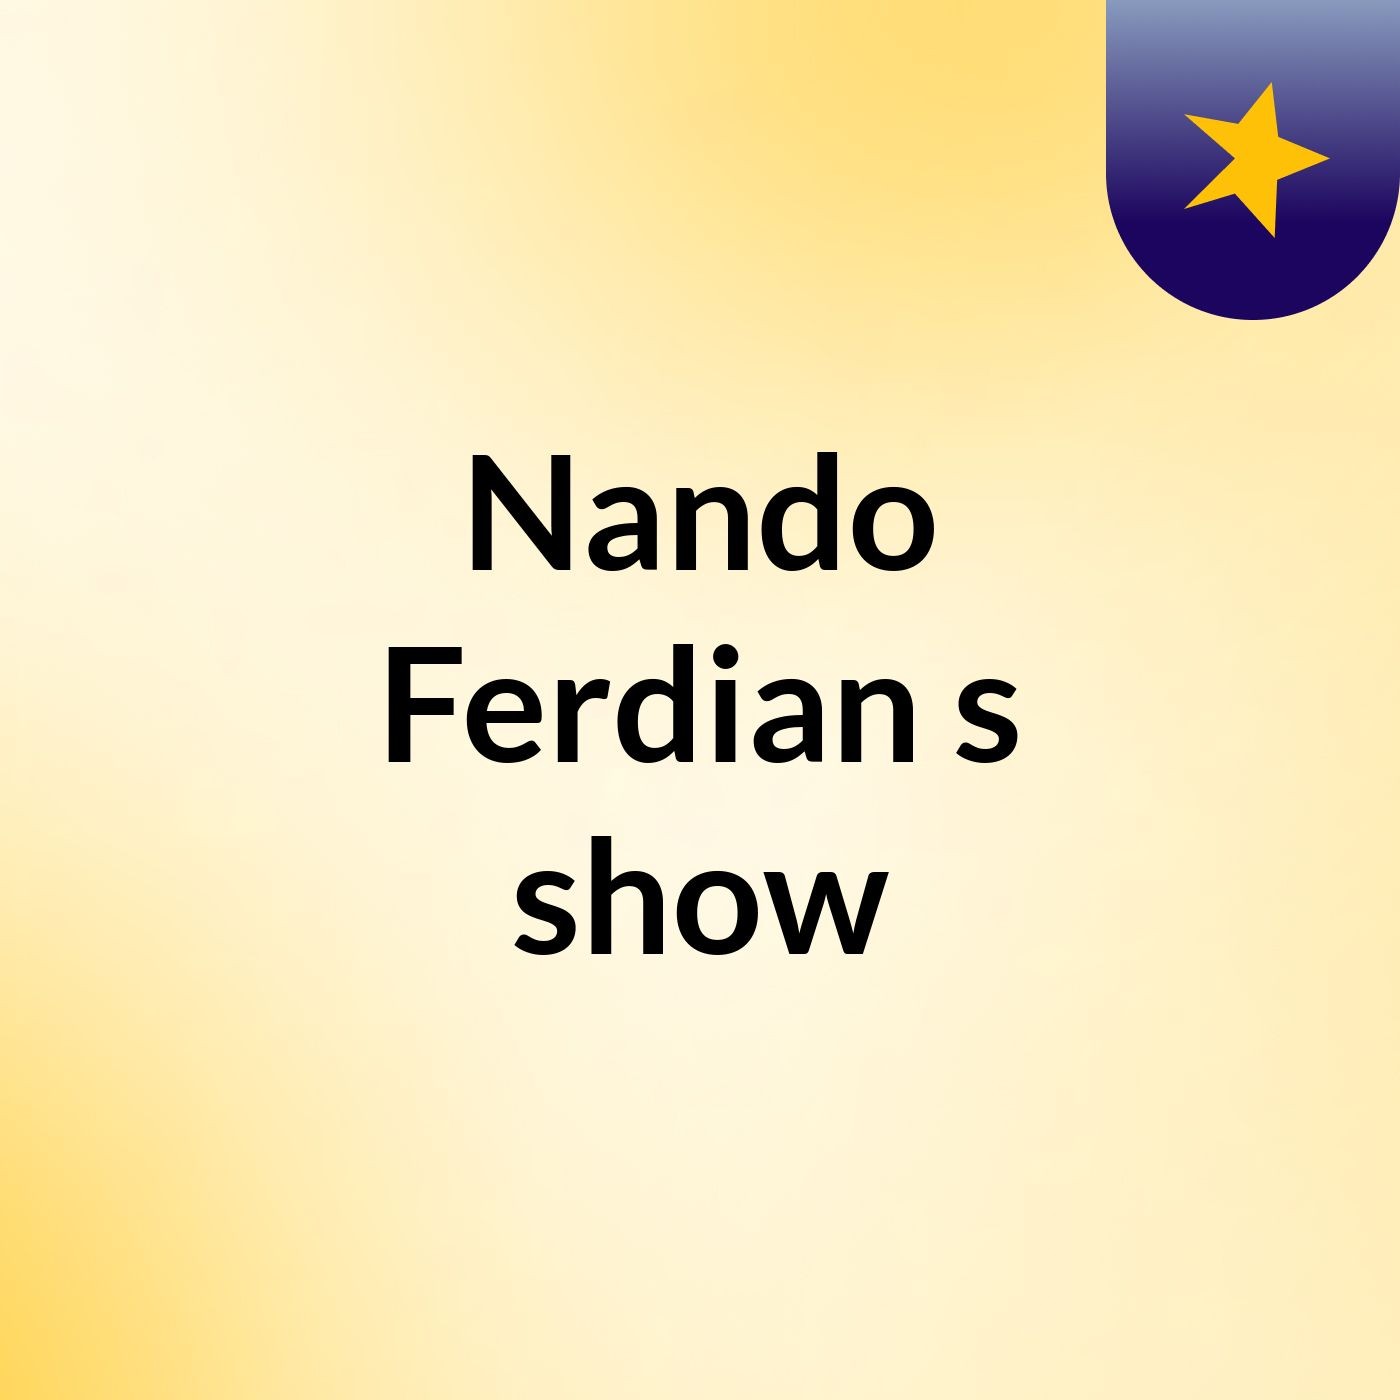 Nando Ferdian's show